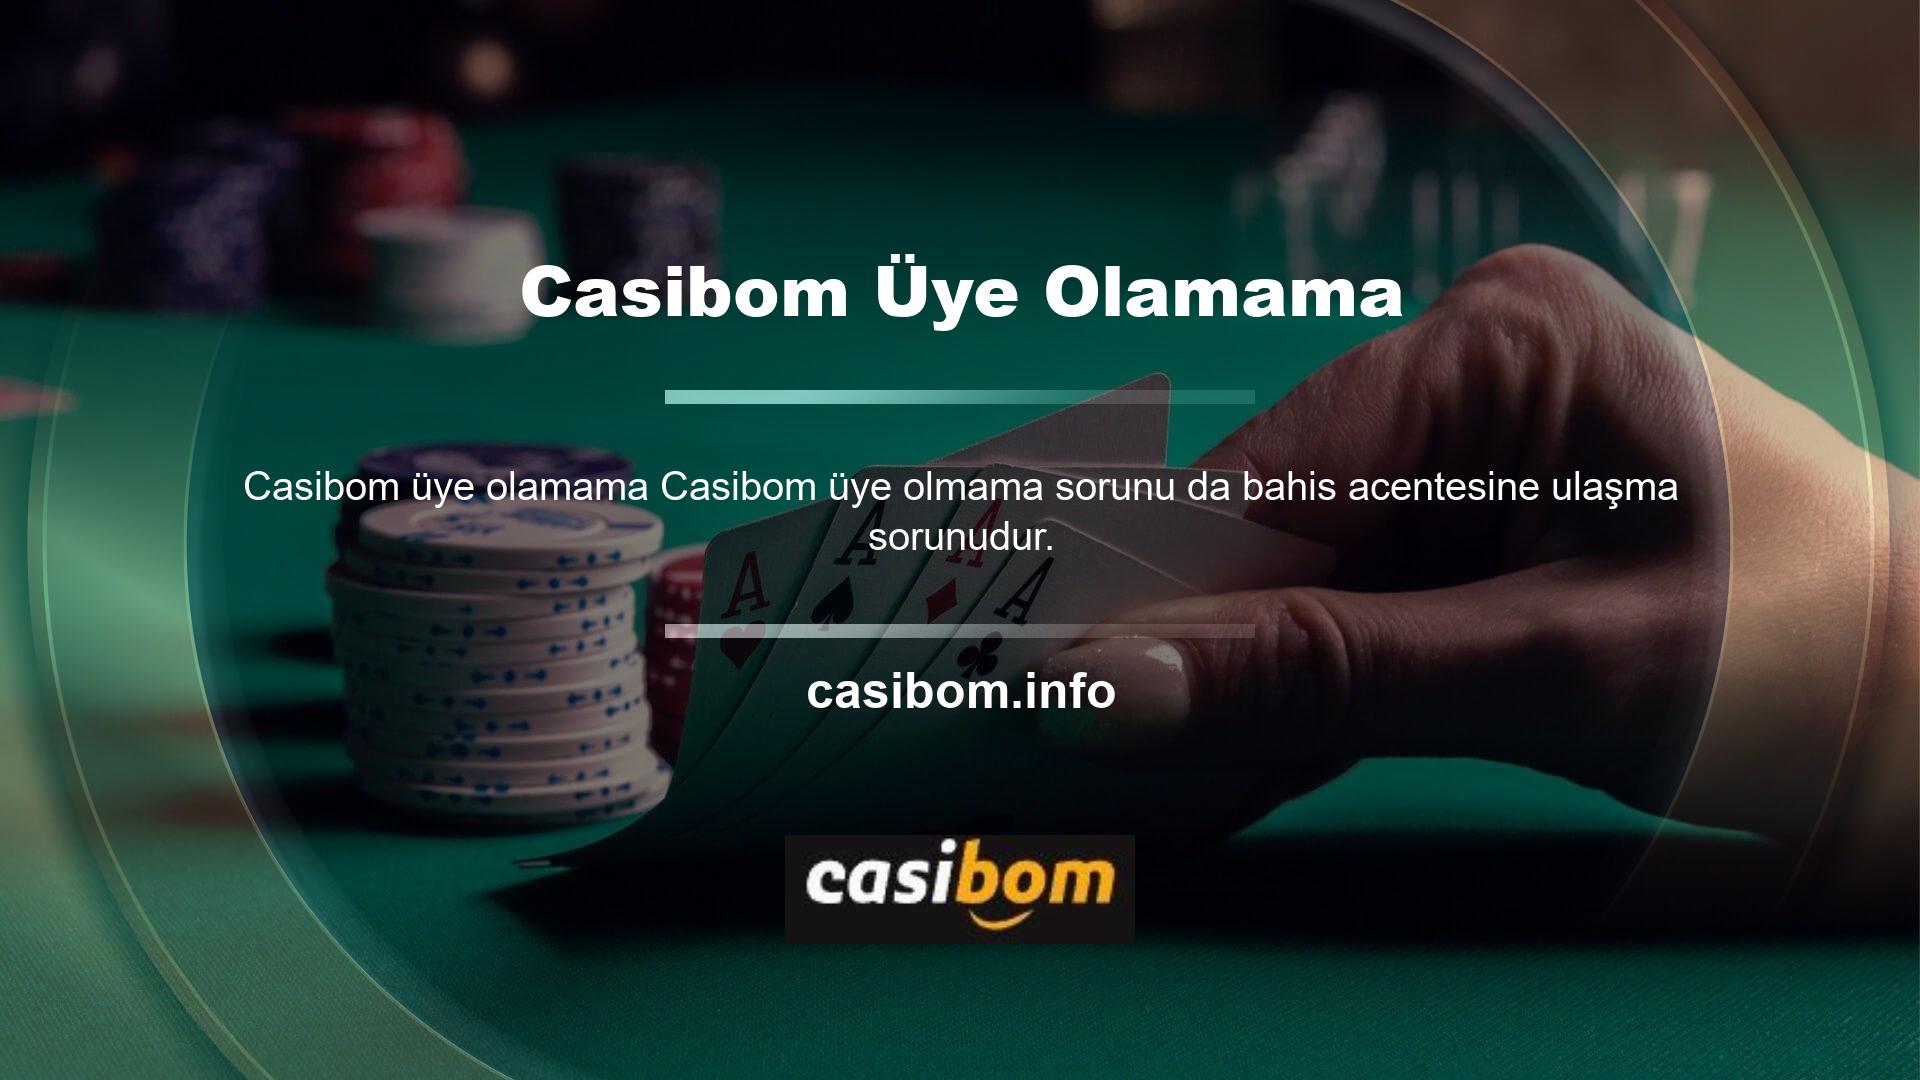 Aslında bu sorun tüm Casibom casino web sitelerinde yaygındır